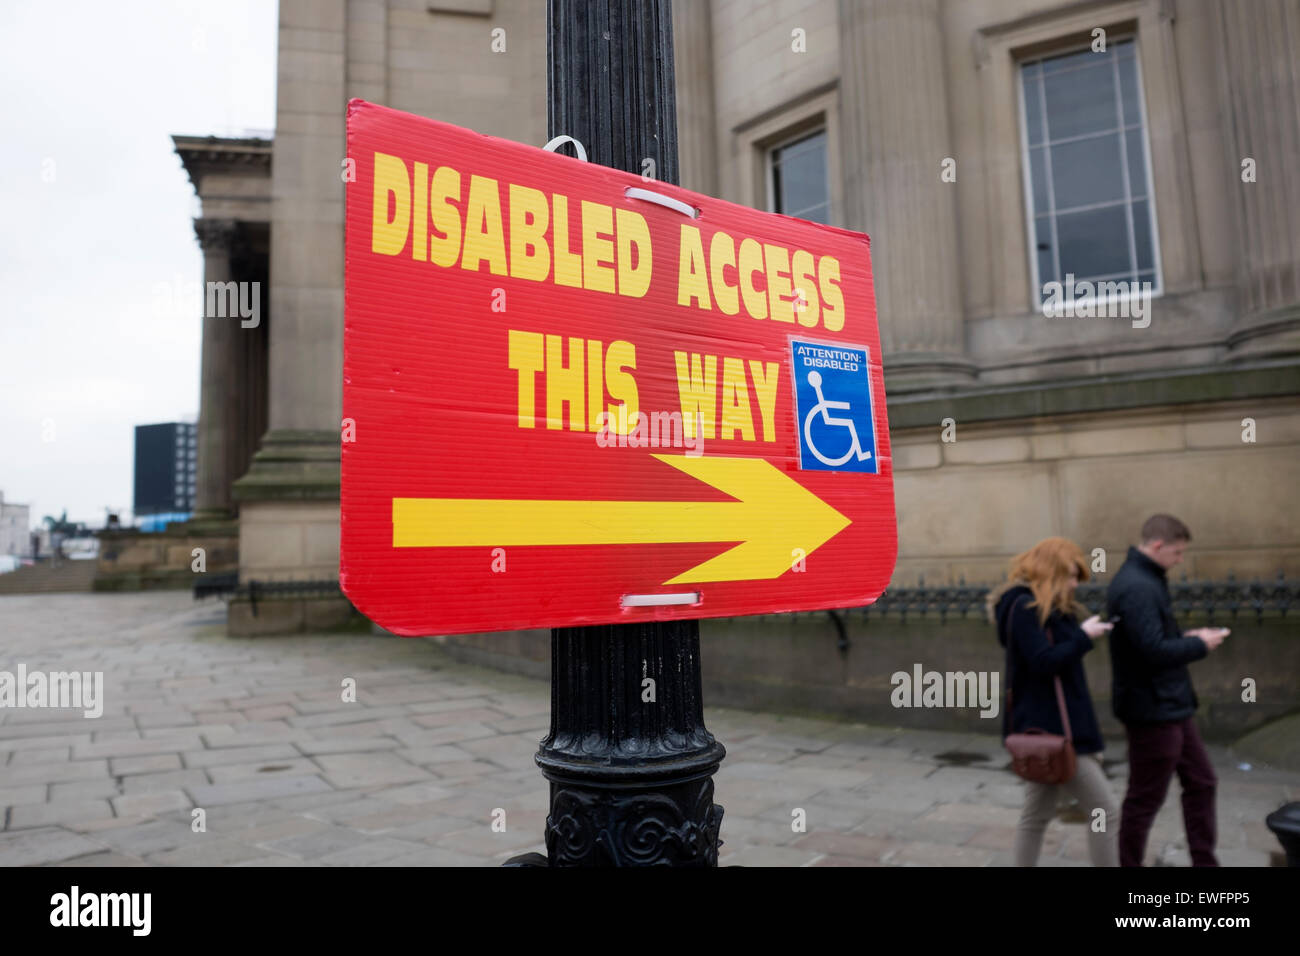 Behindertengerechter Zugang auf diese Weise melden Mobilität ermöglichen Stockfoto